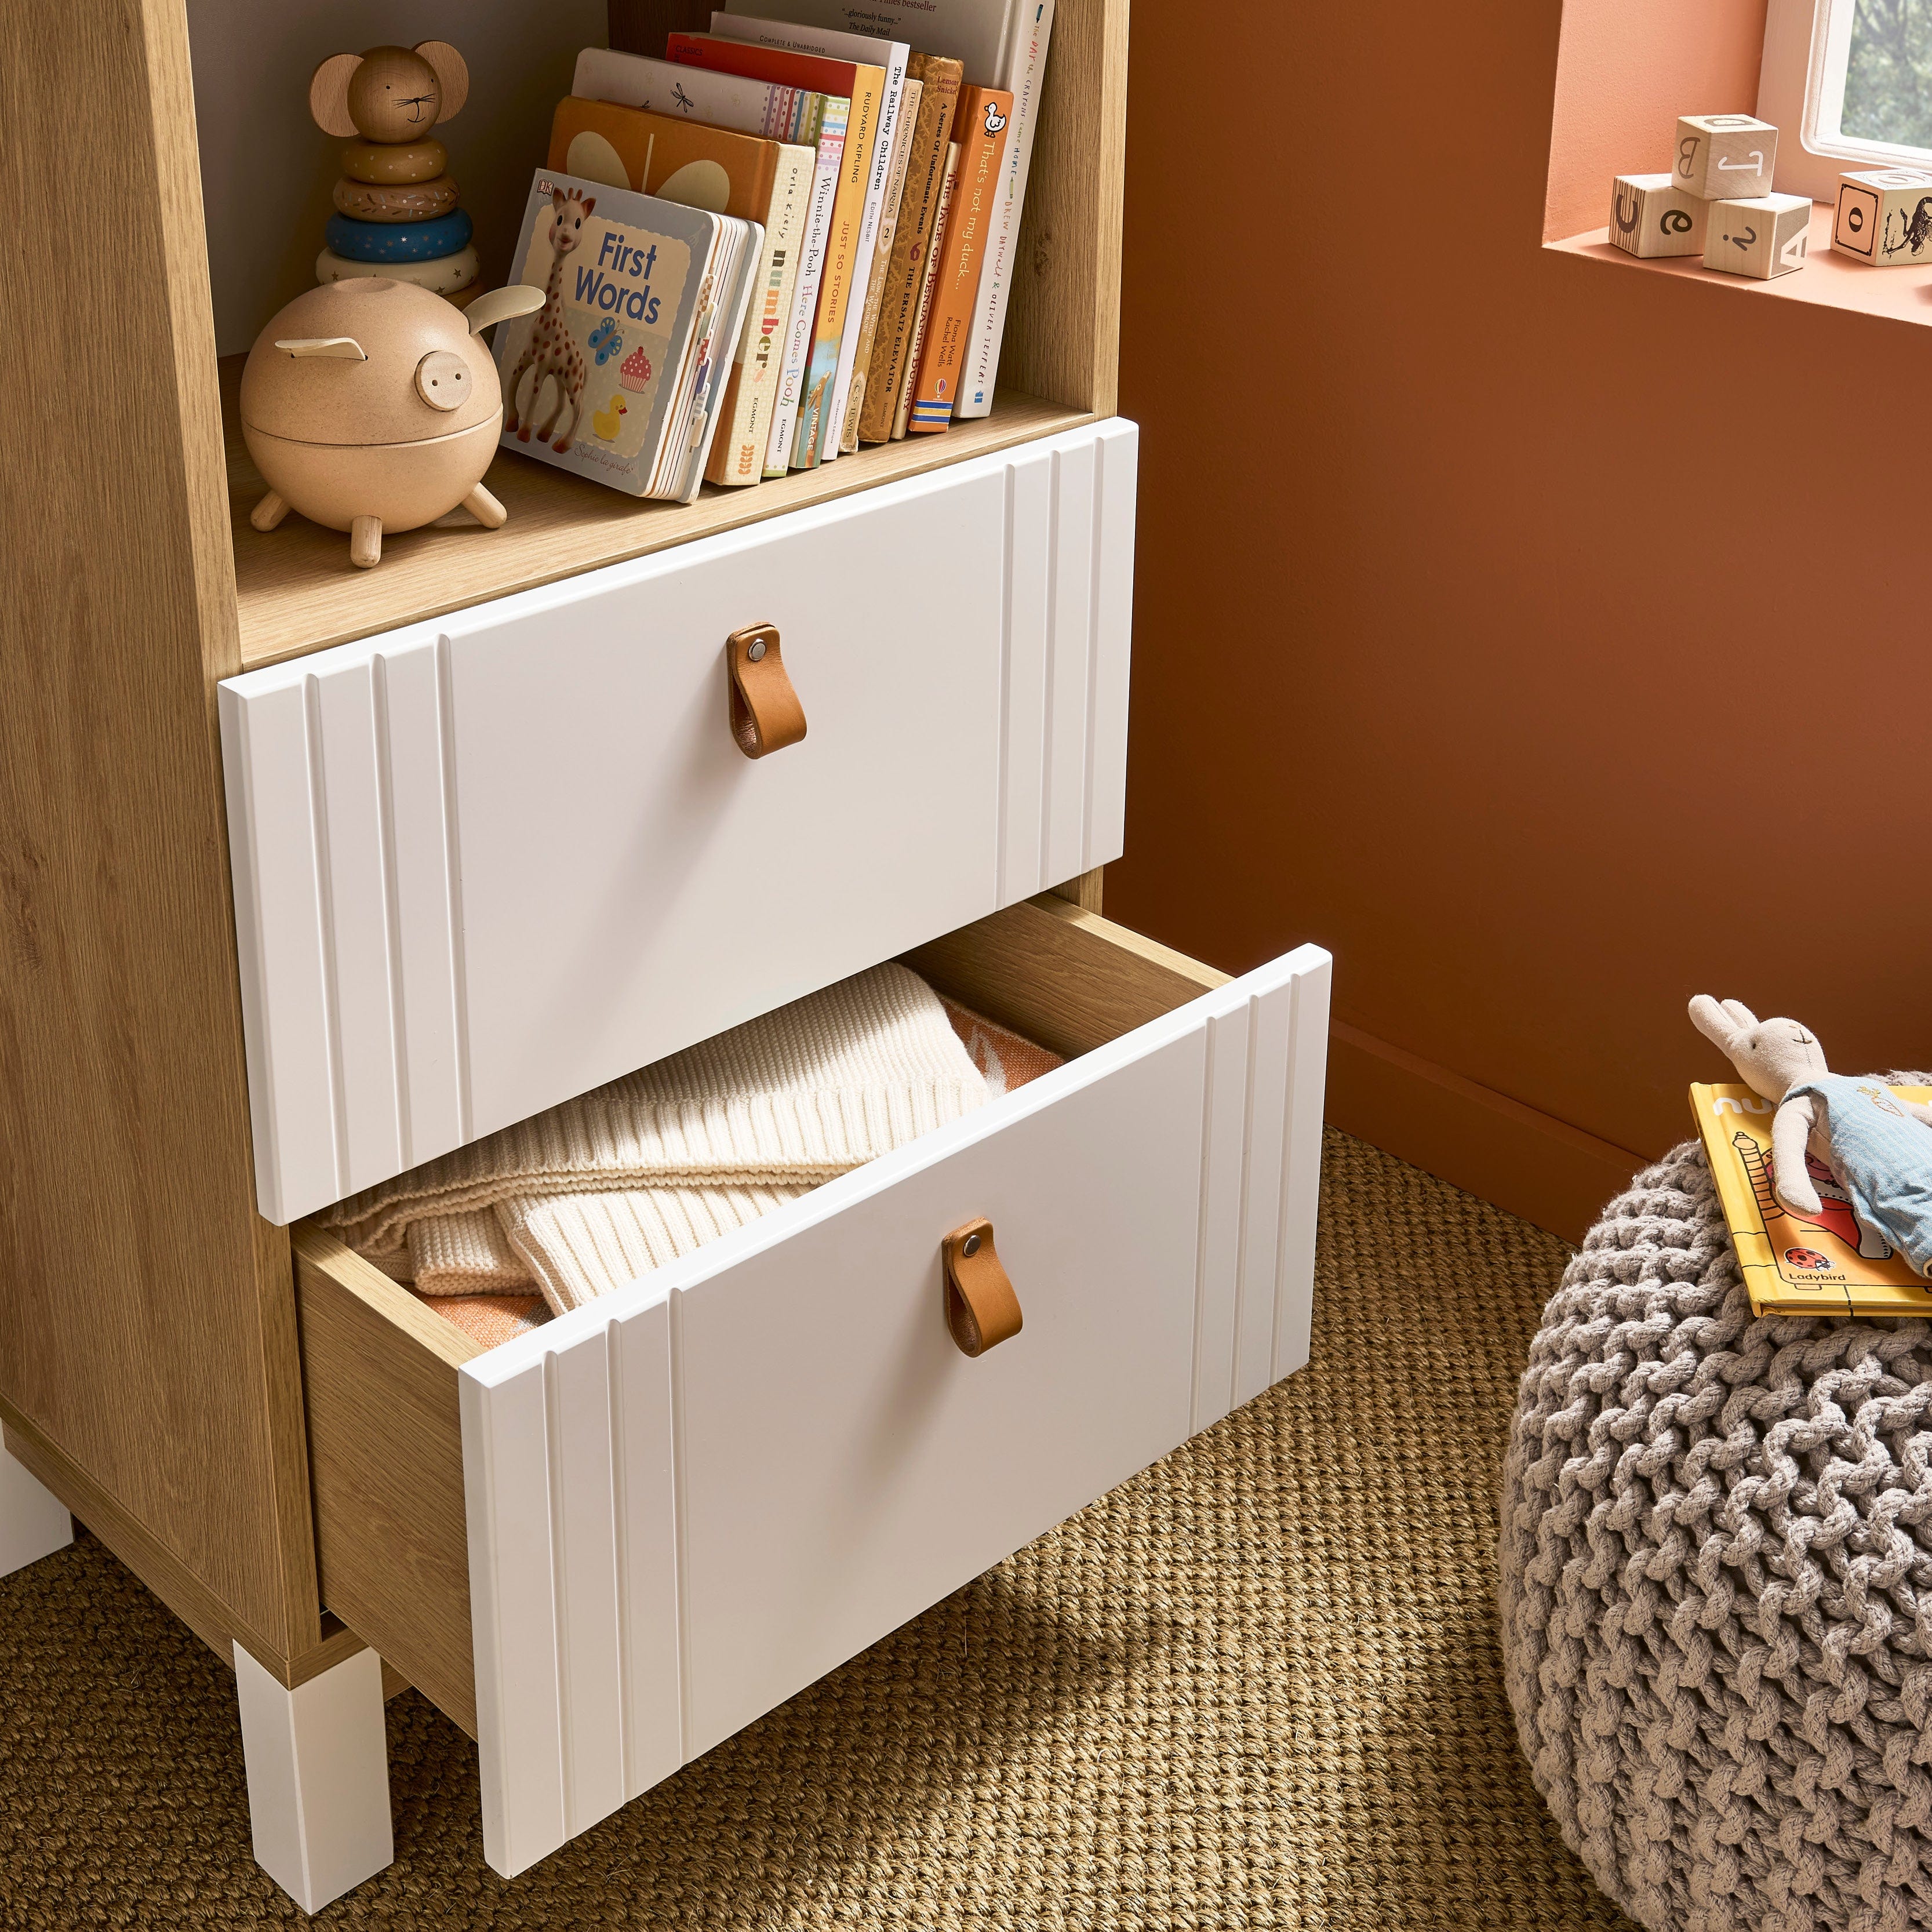 CuddleCo Rafi 5 Piece Room Set in Oak & White Nursery Room Sets